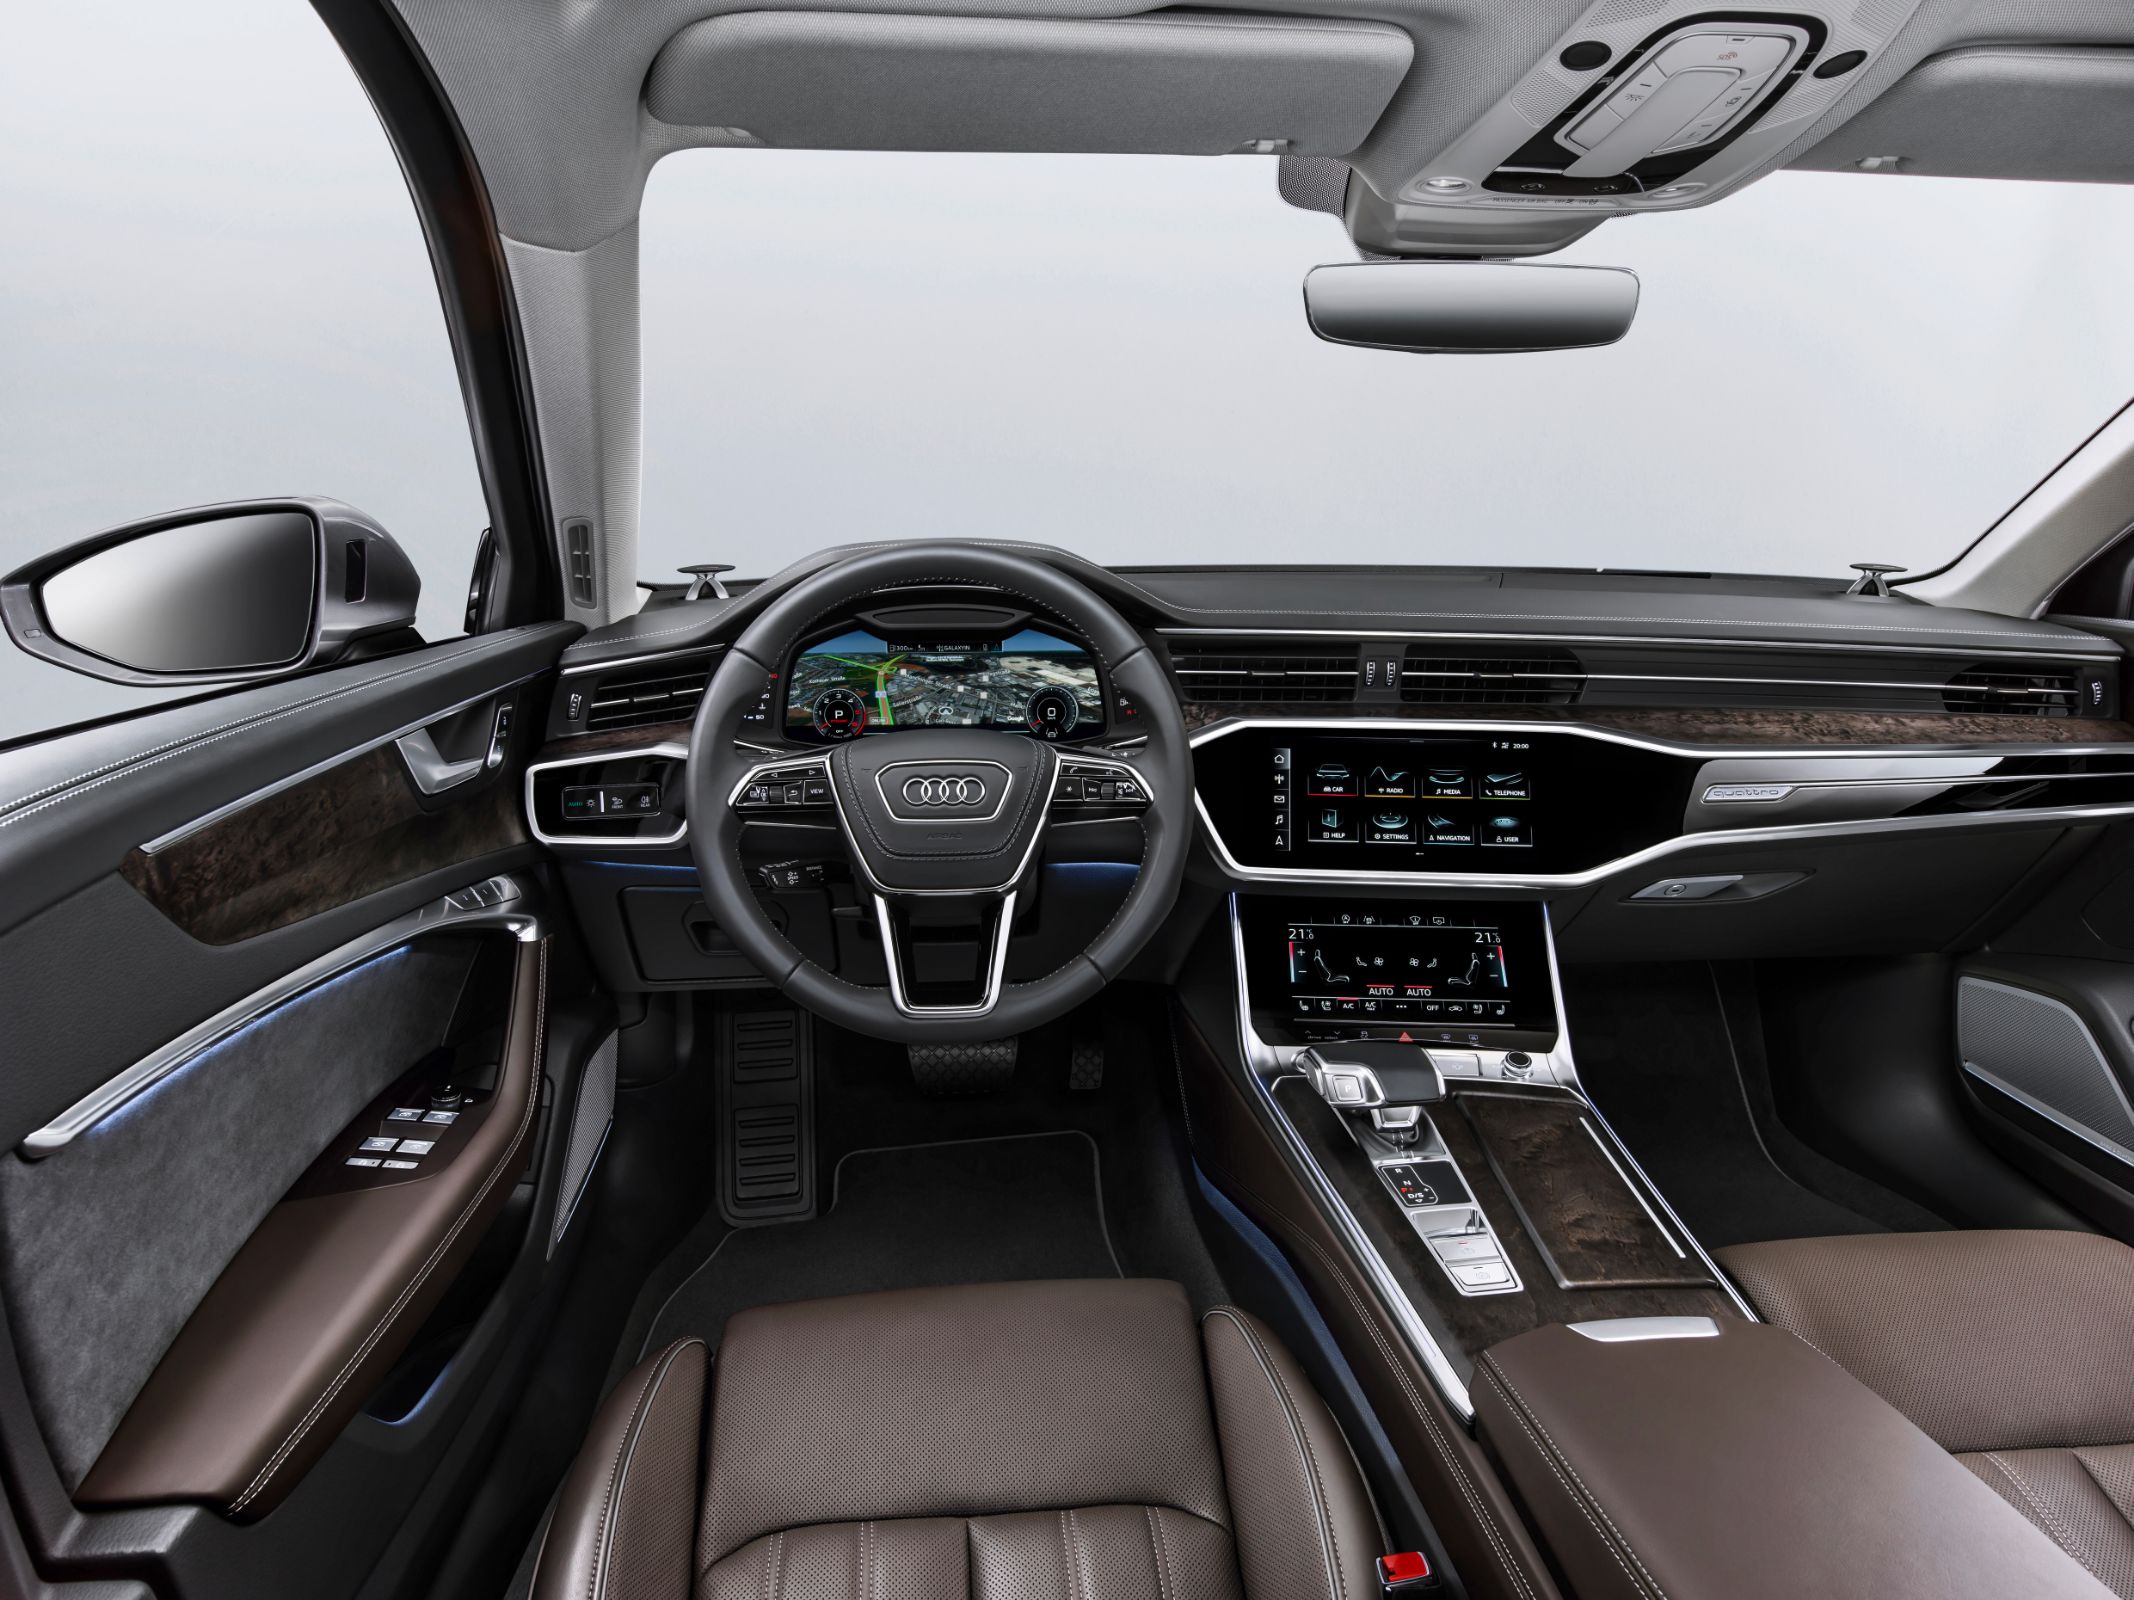 Audi A6 será apresentado no Salão do Automóvel de São Paulo. Modelo terá duas opções de motorização com tecnologia híbrida. Preços não foram divulgados.